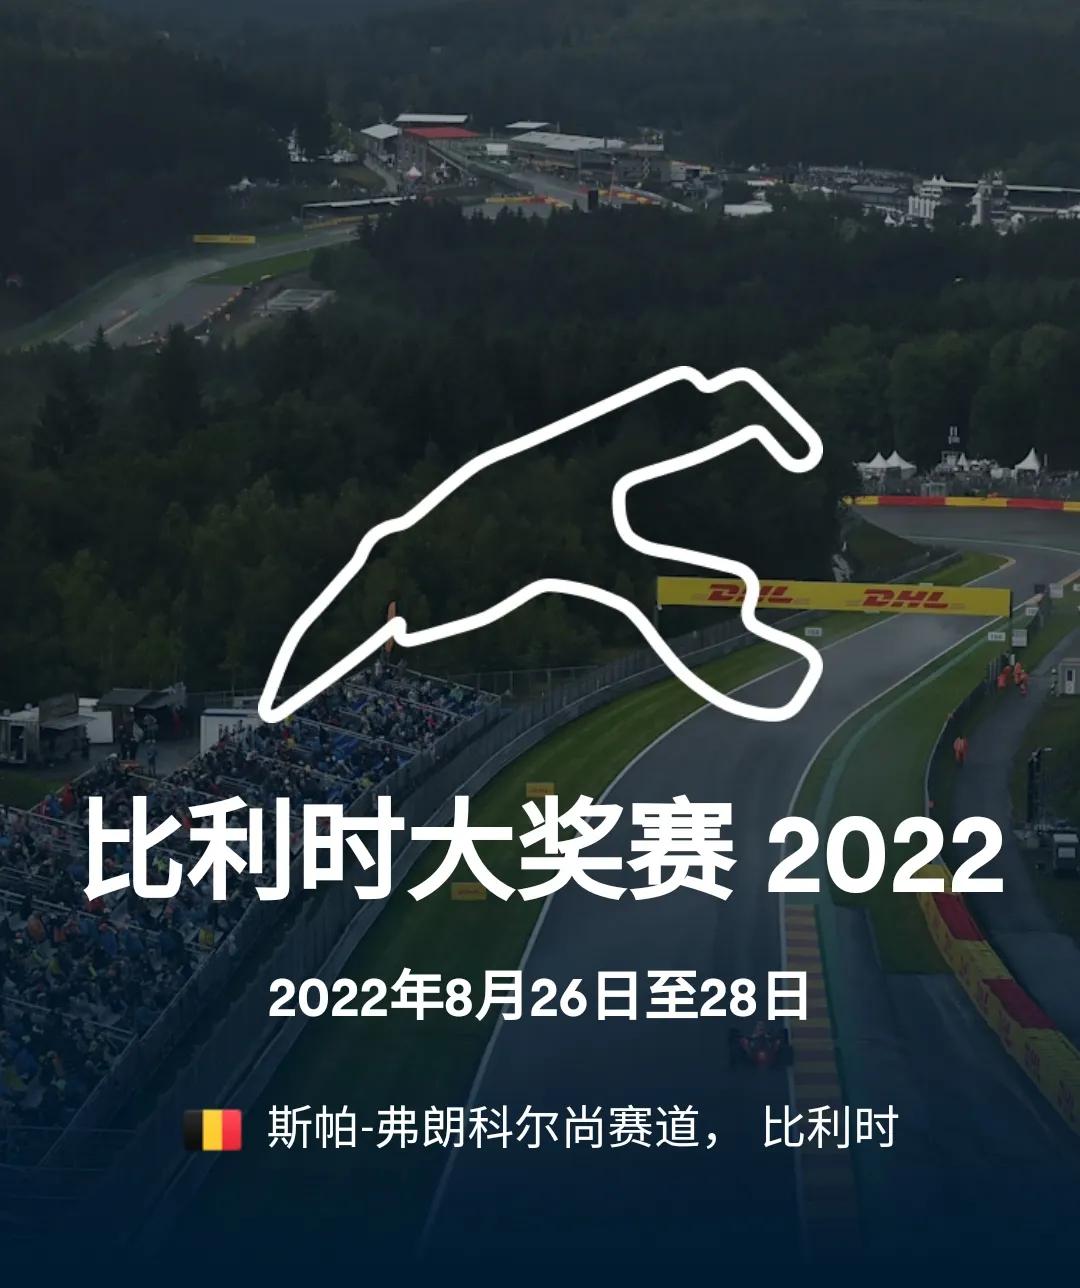 F1比利时站-斯帕赛道(2022 F1 第14站 比利时大奖赛（斯帕-弗朗科尔尚赛道）)